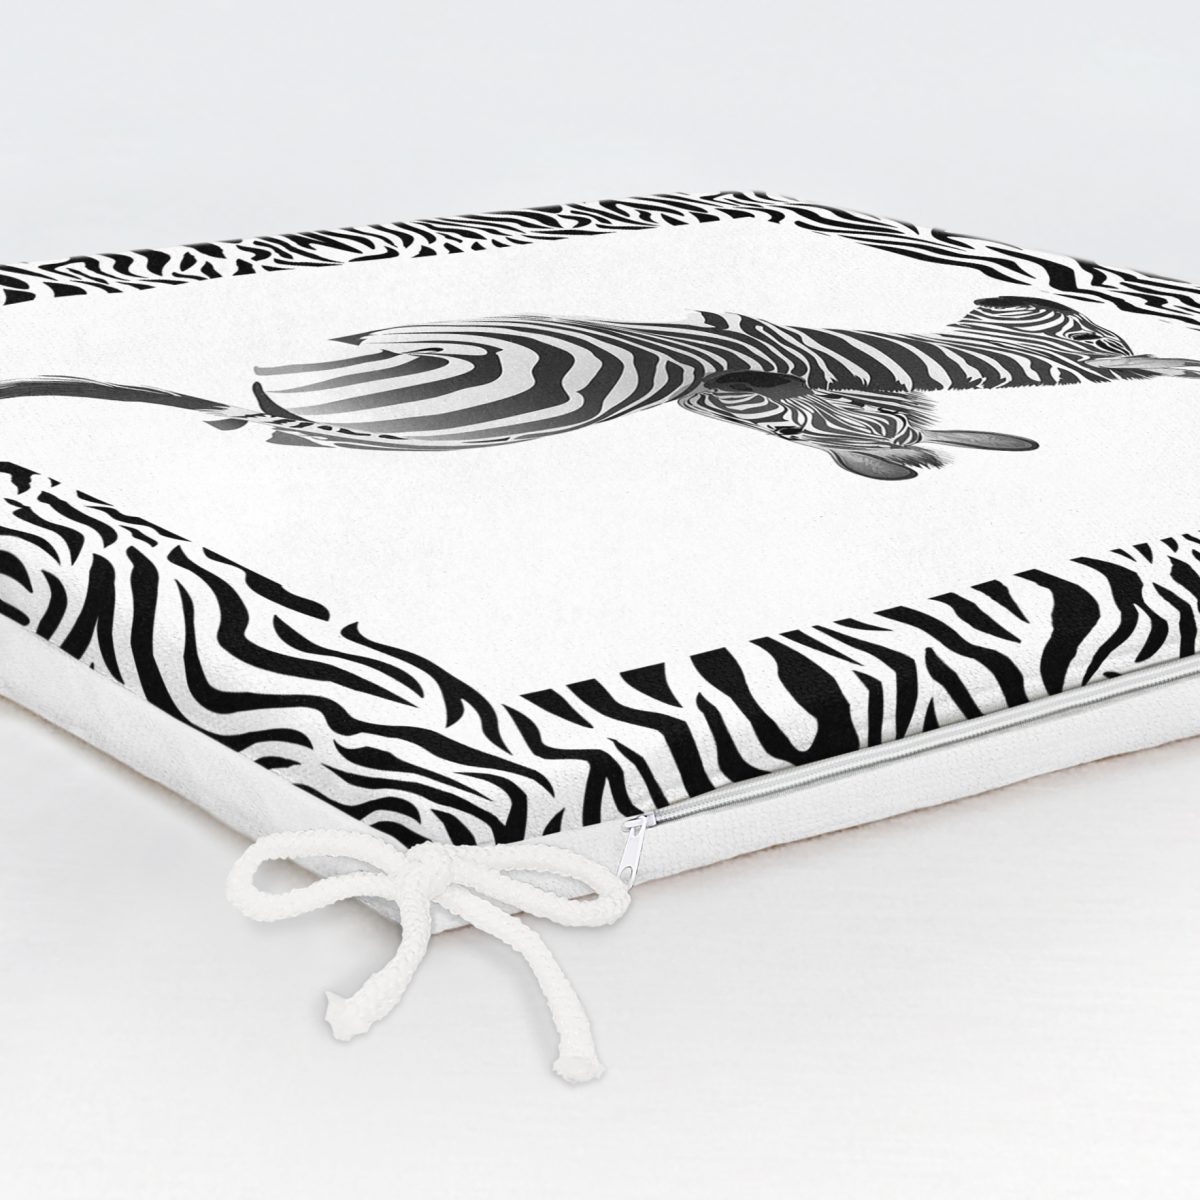 Zebra Çerçeveli Zebra Desenli Dijital Baskılı Fermuarlı Sandalye Minderi Realhomes